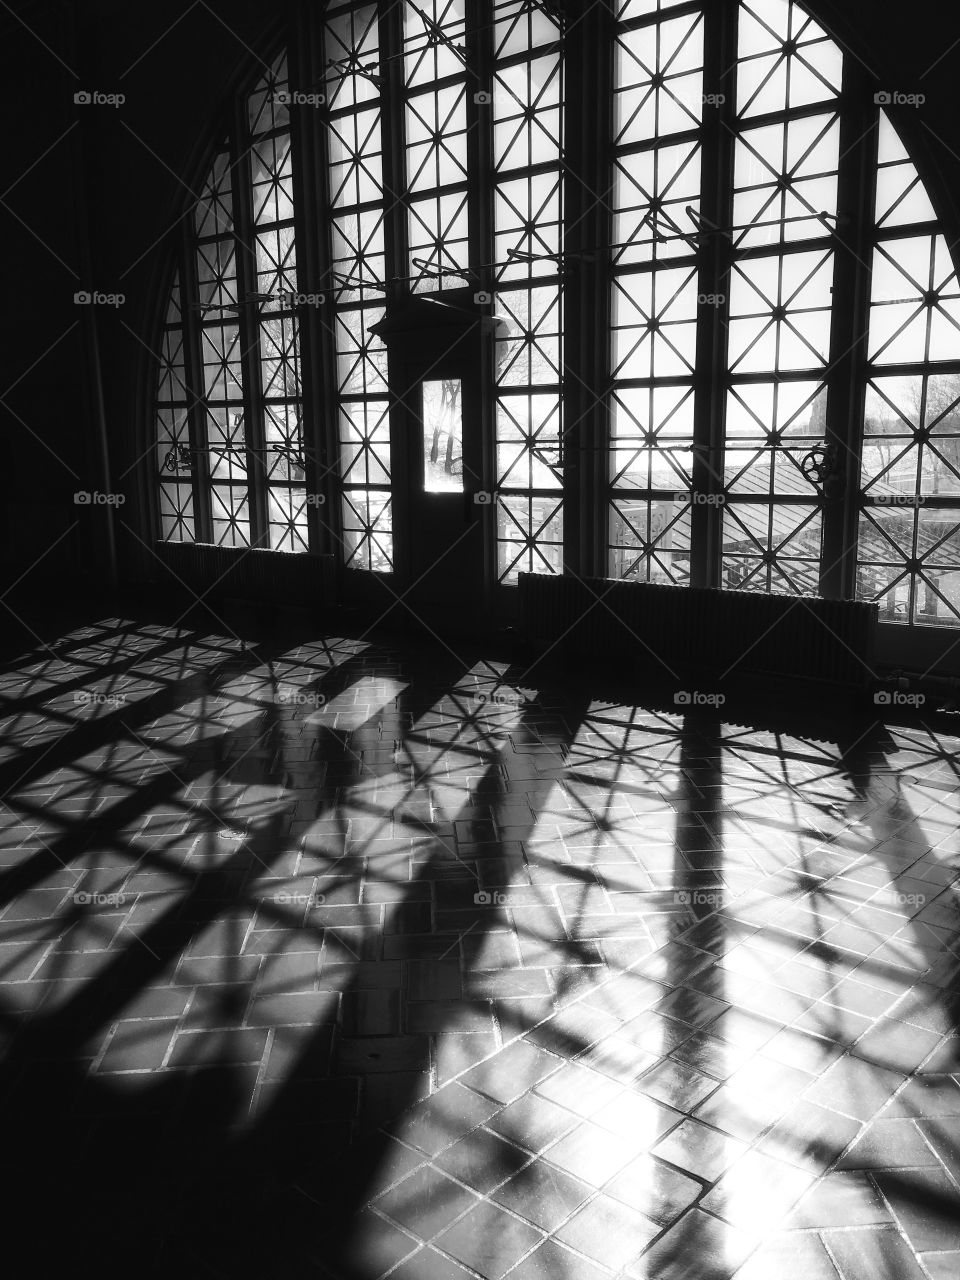 Ellis Island windows